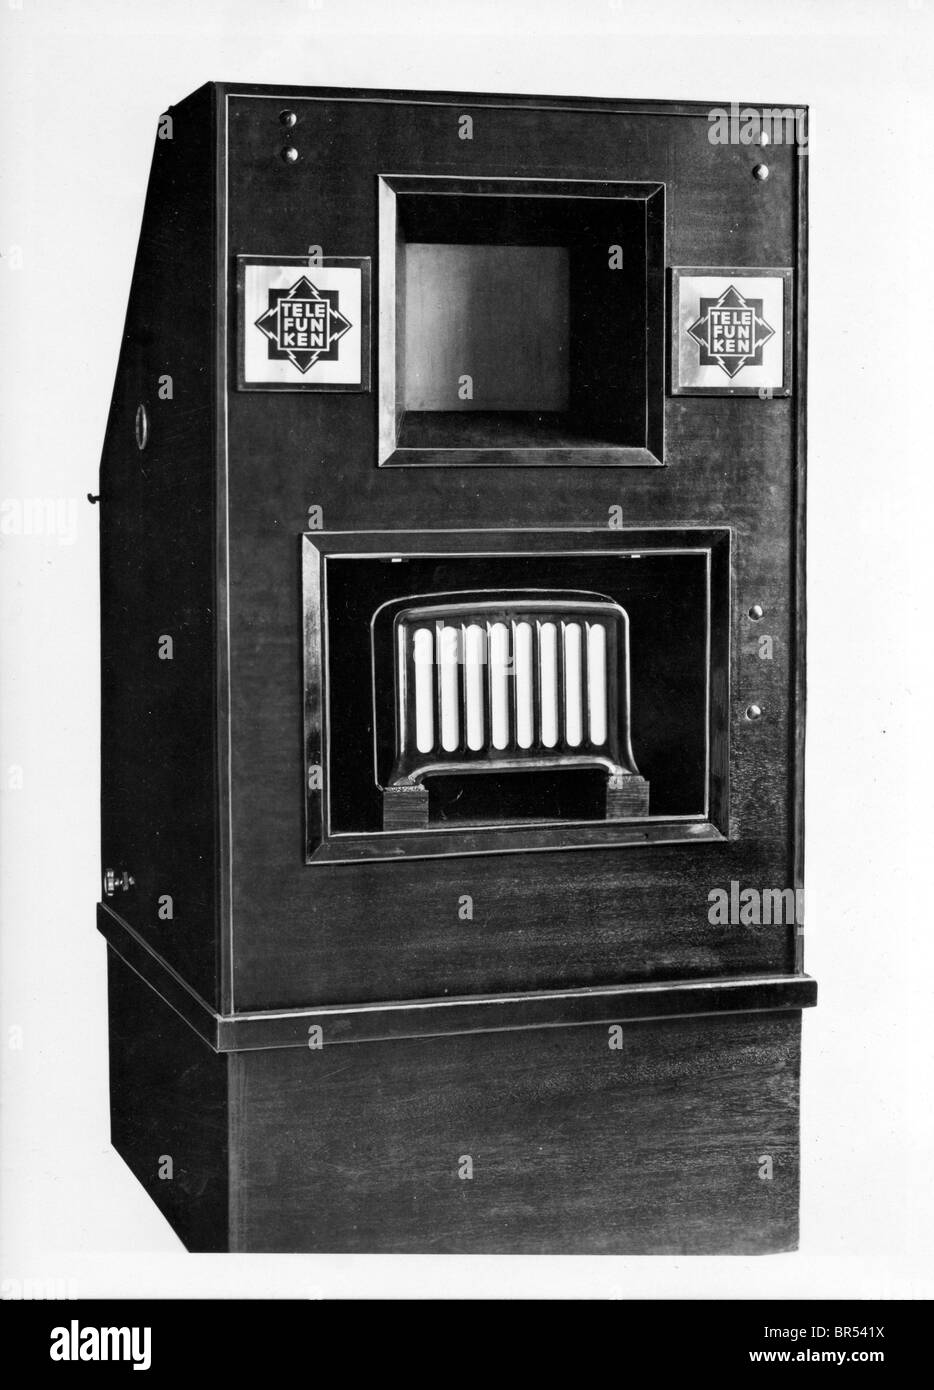 Fotografia storica, Telefunken televisione VHF, intorno al 1930 Foto Stock